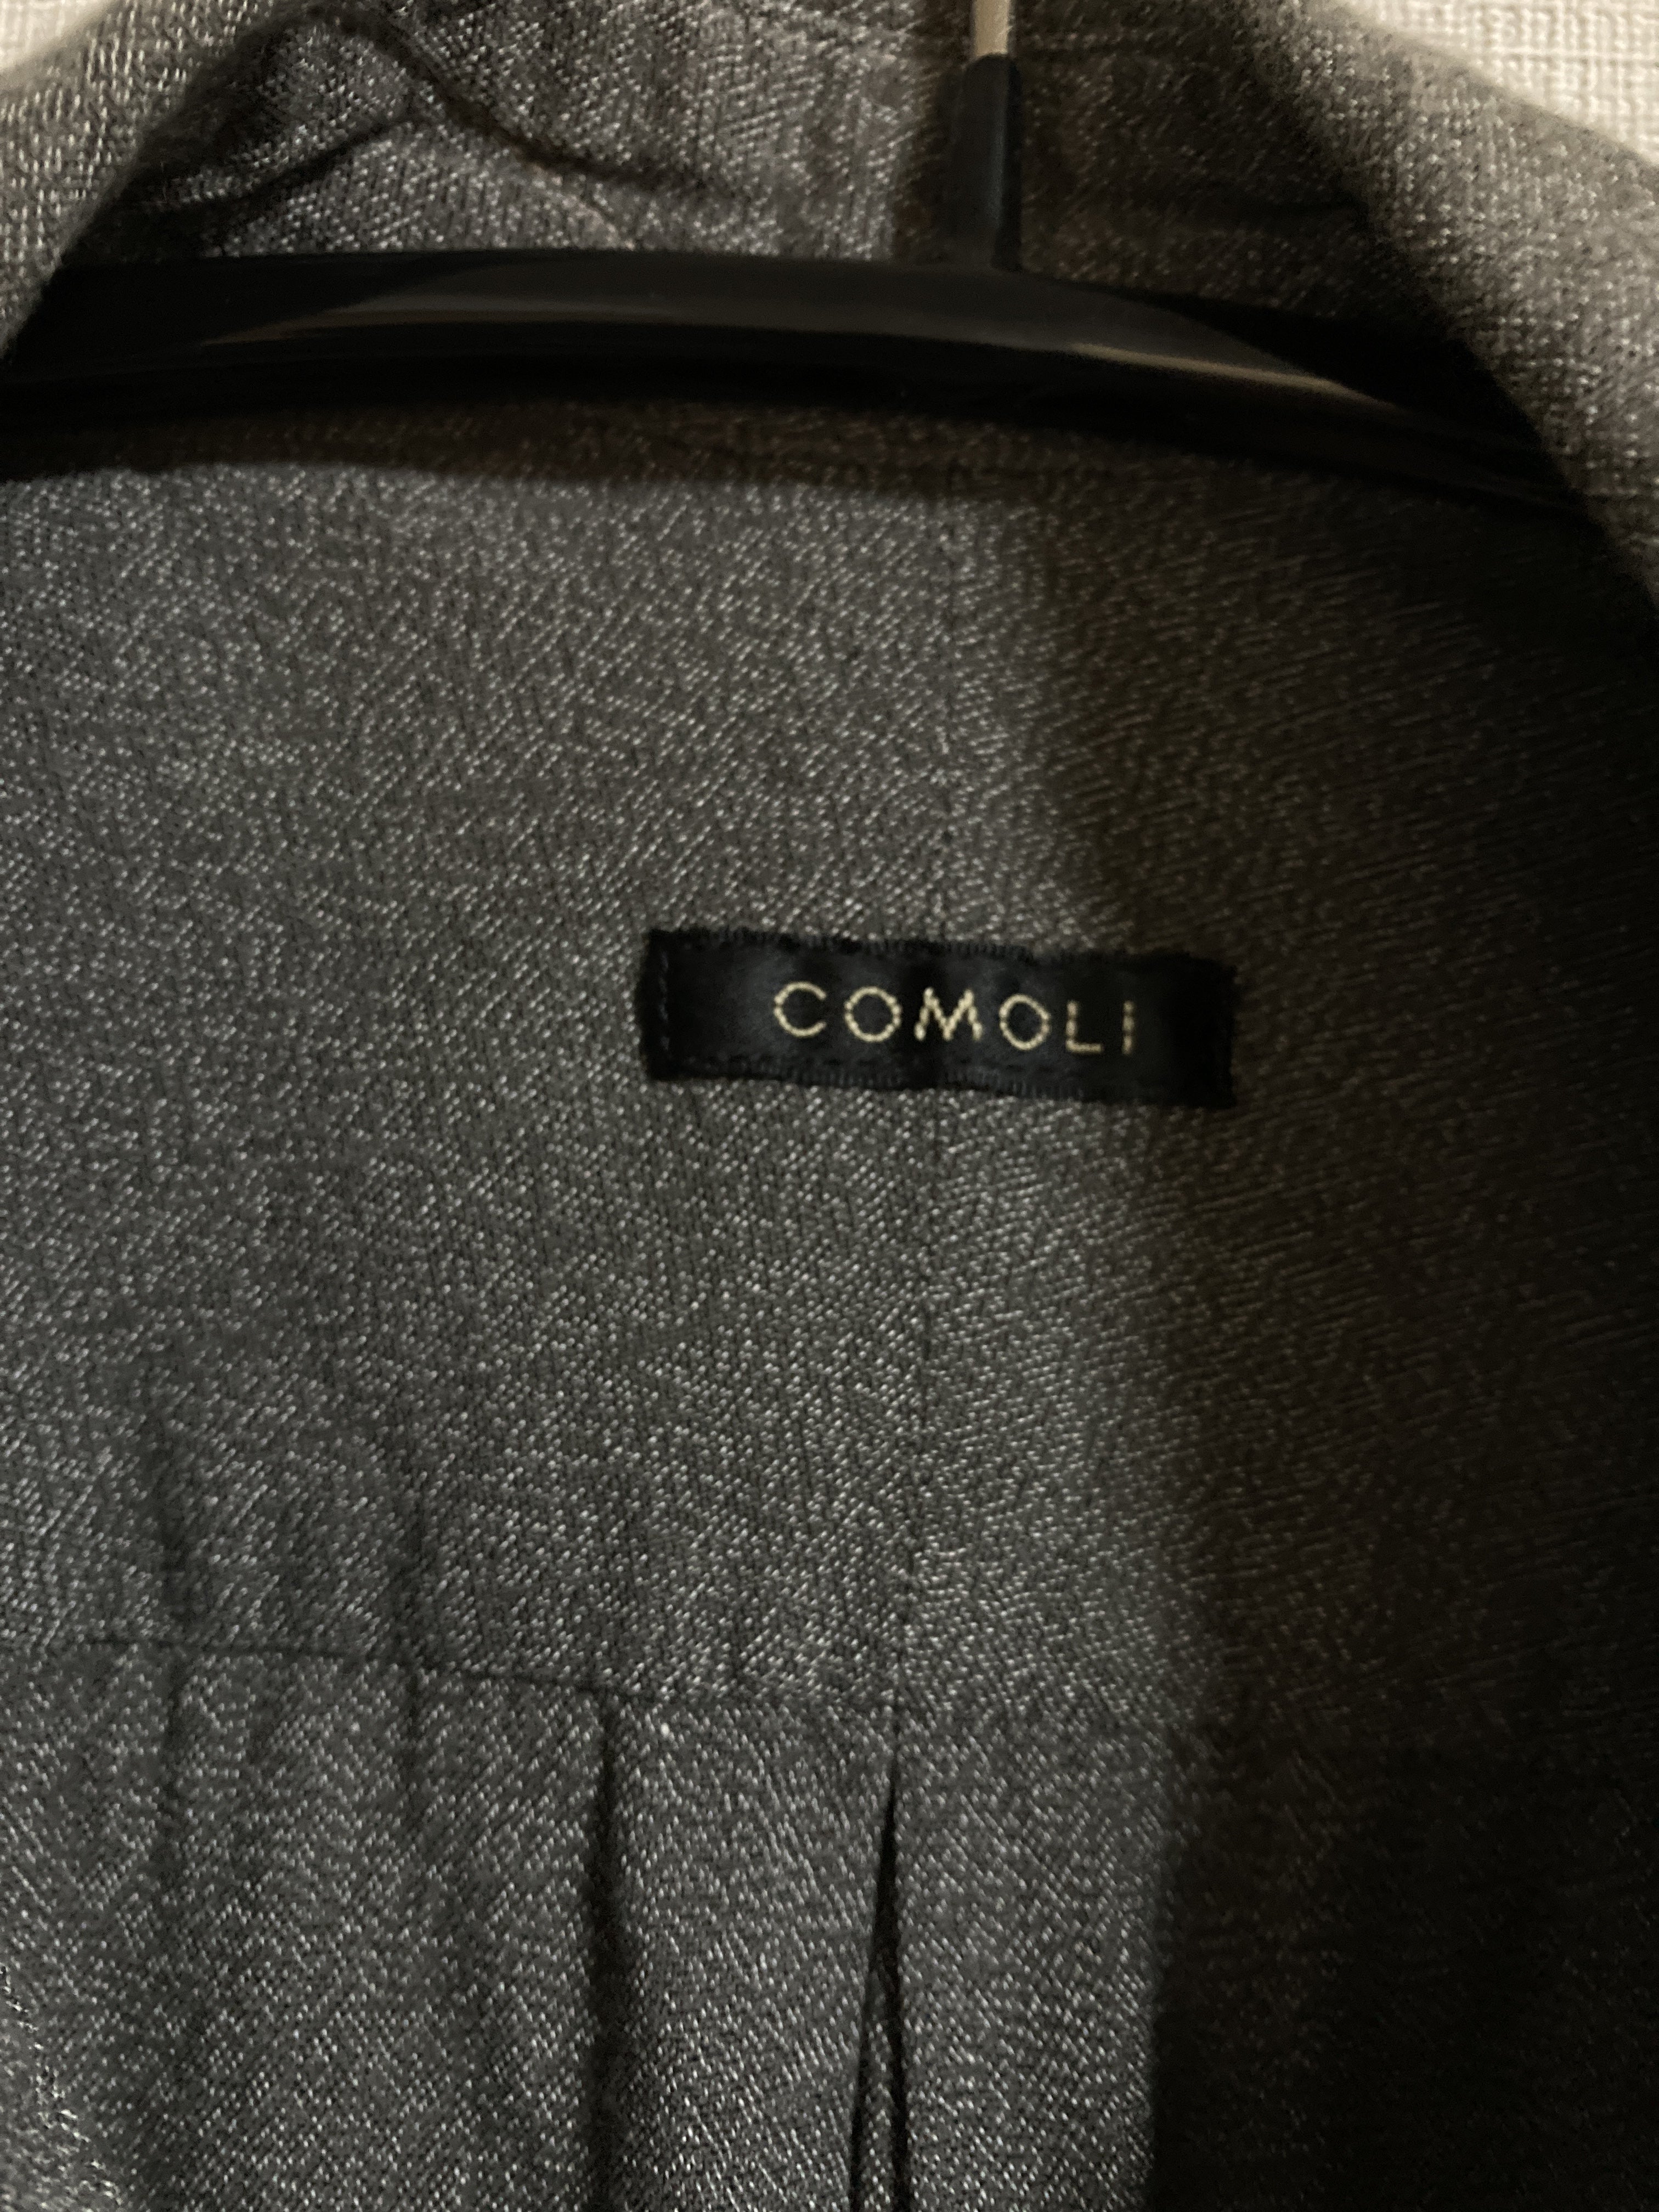 フレンチヴィンテージ顔負け】COMOLI 21SSヨリ杢シャツのサイズ感や